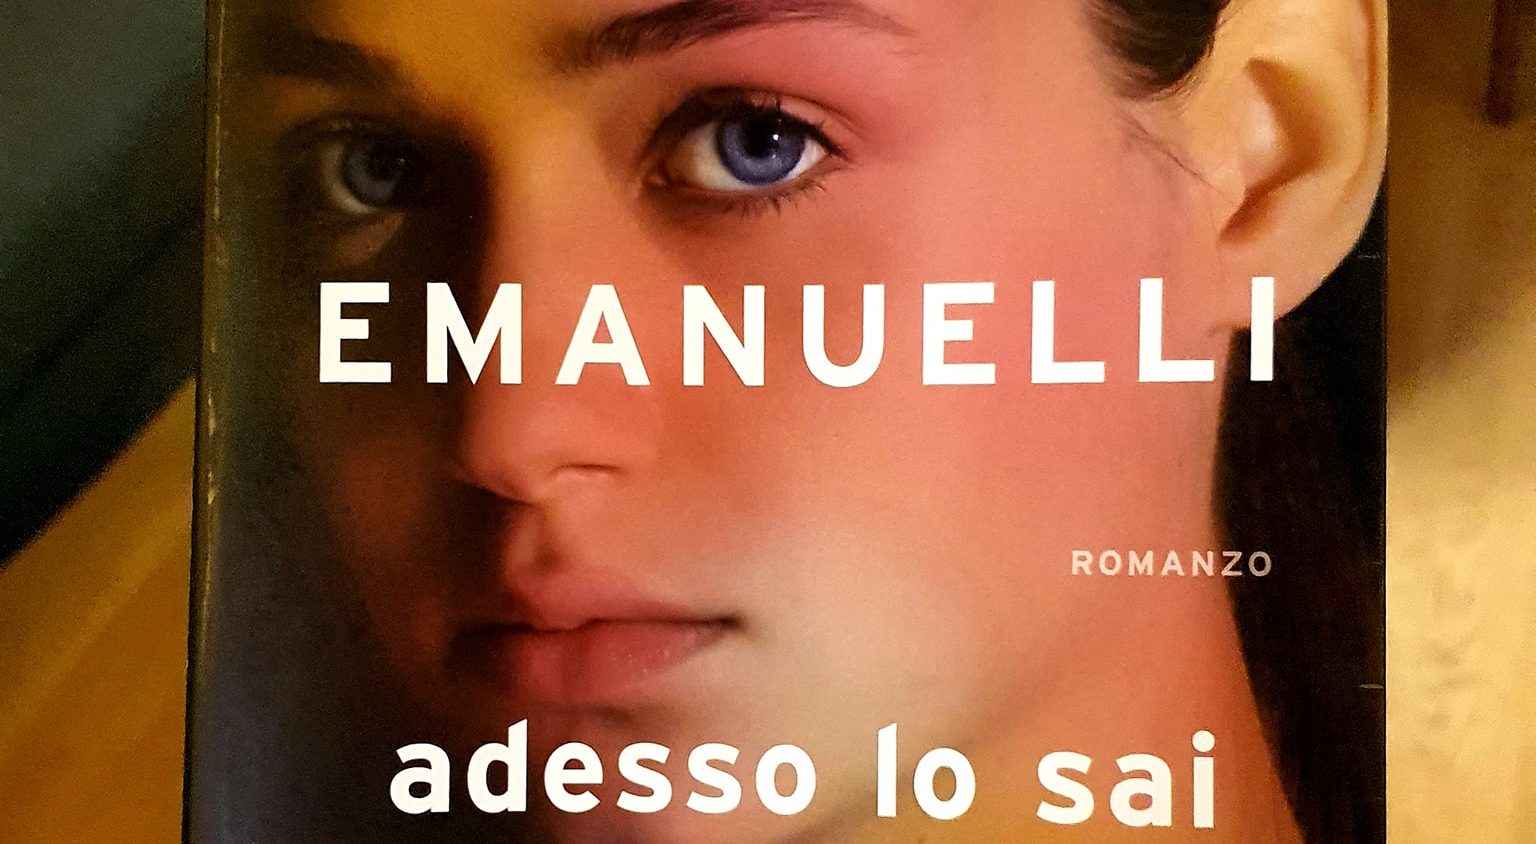 “Adesso lo sai”, conto alla rovescia per il nuovo romanzo di Roberto Emanuelli: in libreria dal 6 ottobre